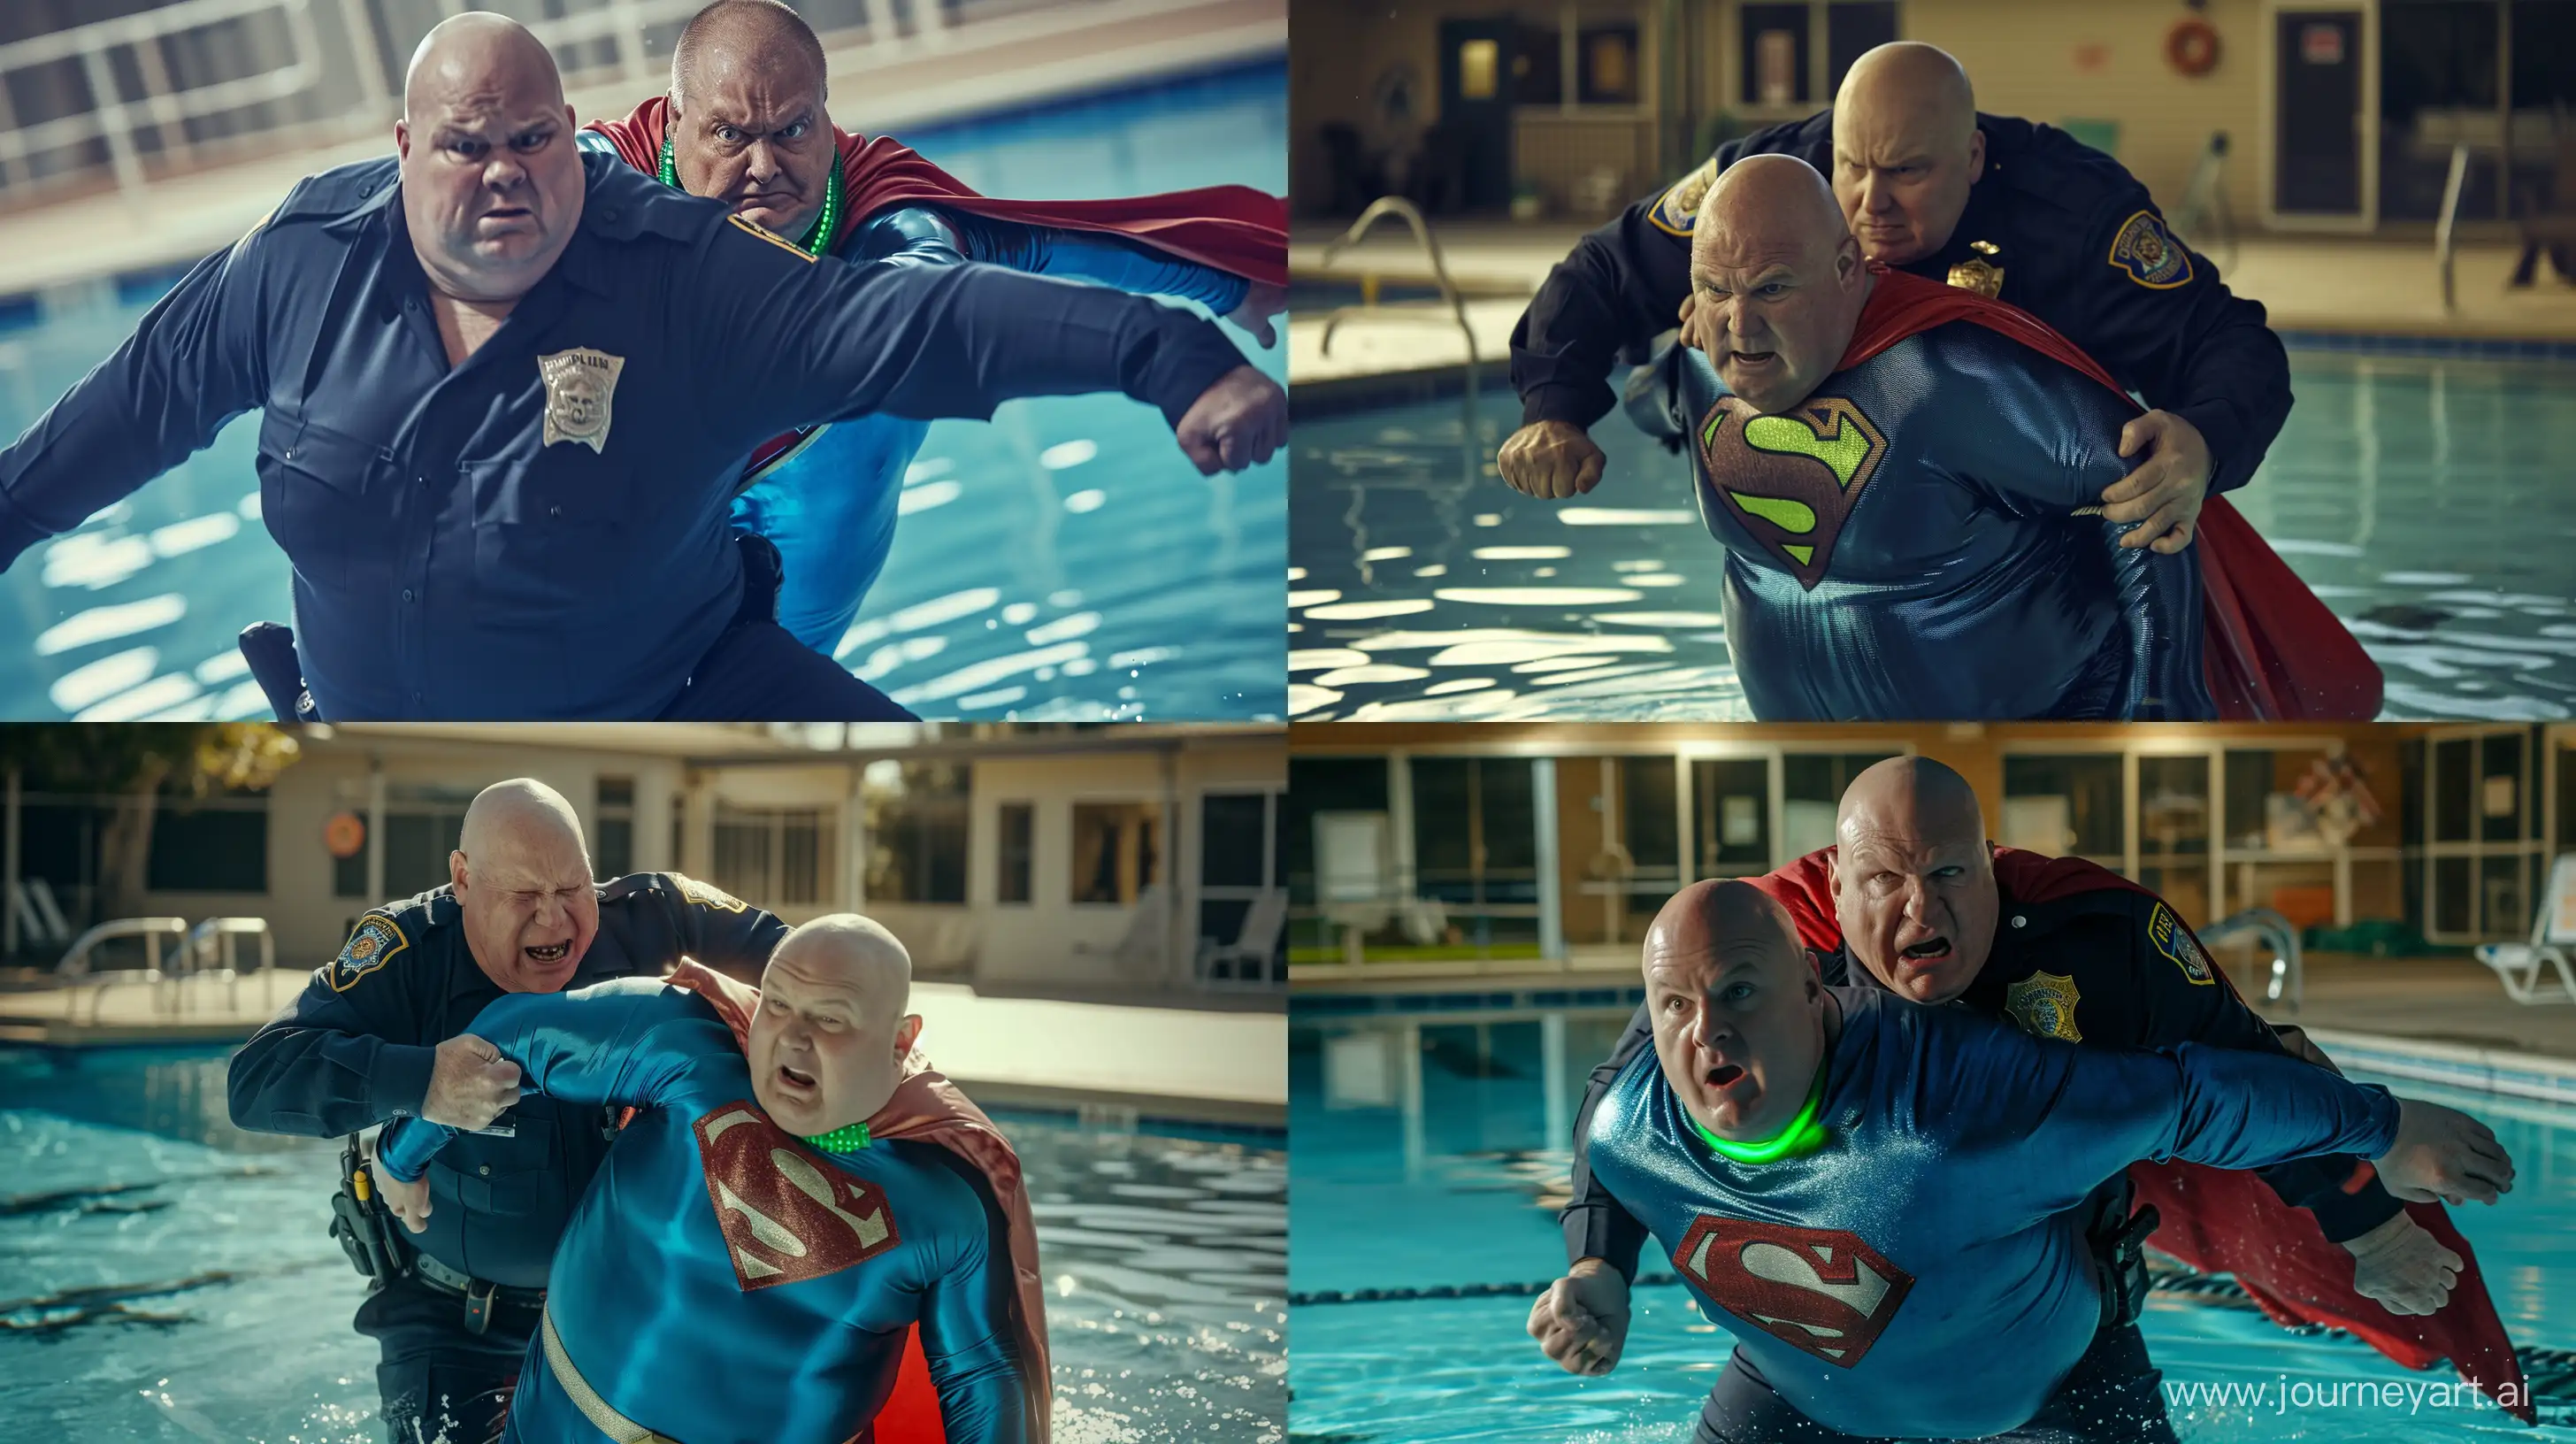 Elderly-Poolside-Showdown-Navy-Officer-vs-Superman-in-Silky-Blue-Costume